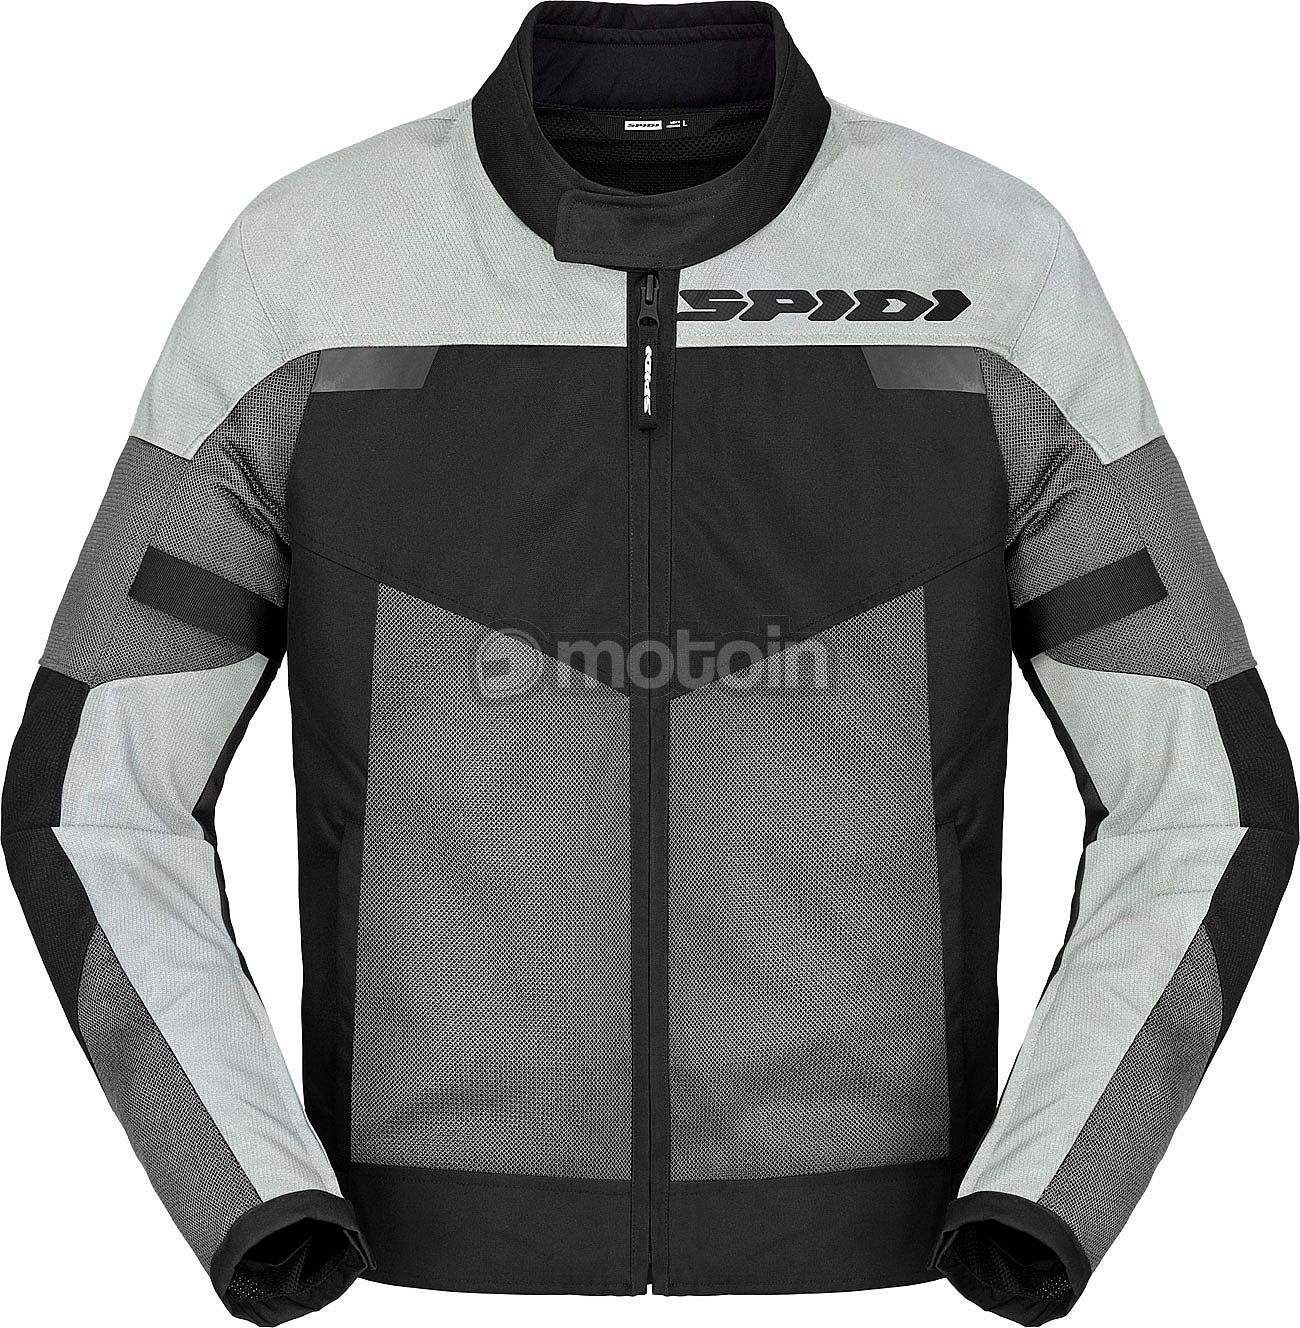 Spidi Tour Net, textile jacket